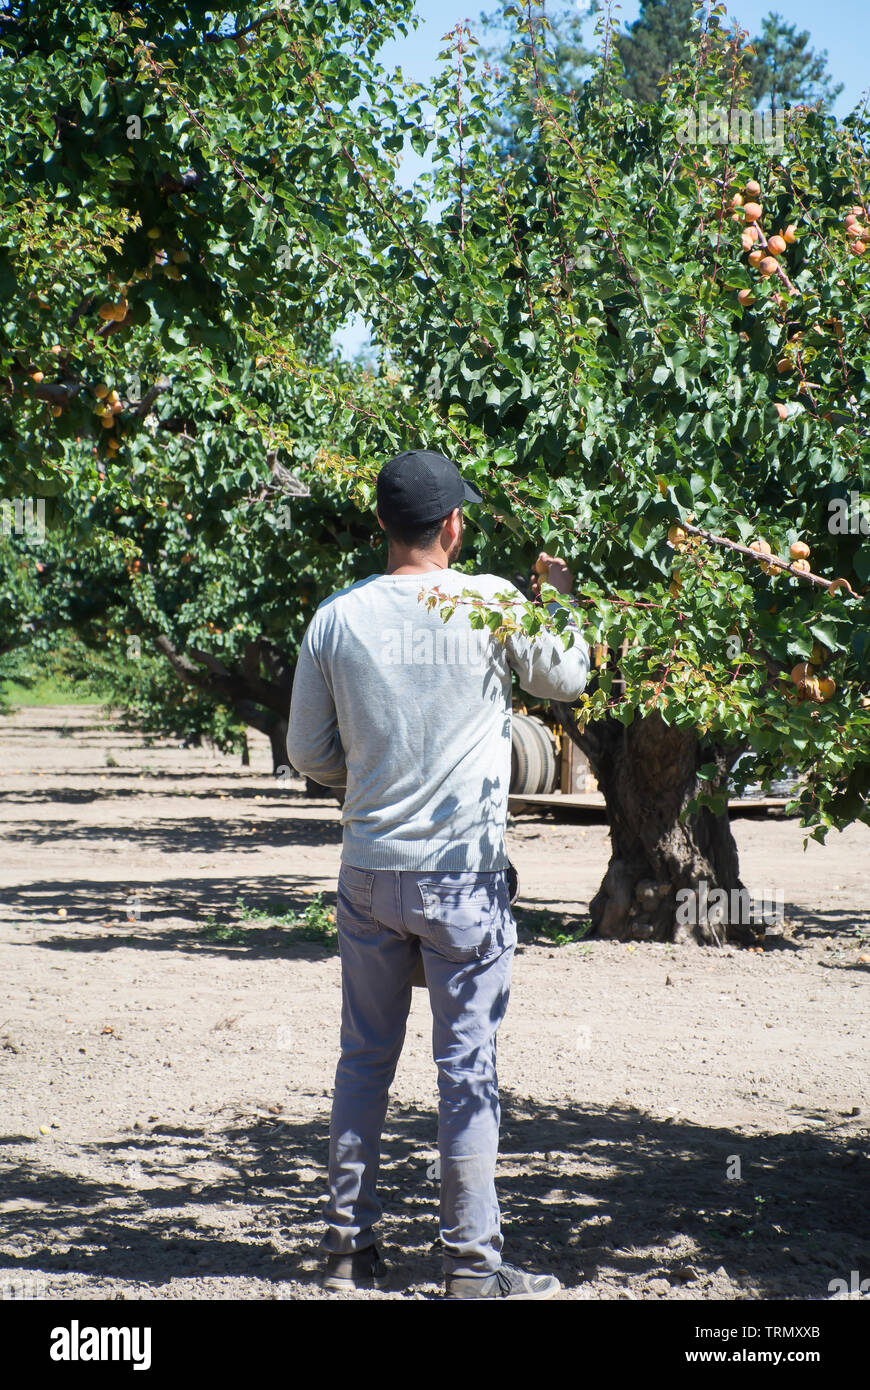 Saisonarbeiter, die Aprikosen in Obstgärten erntet Stockfoto